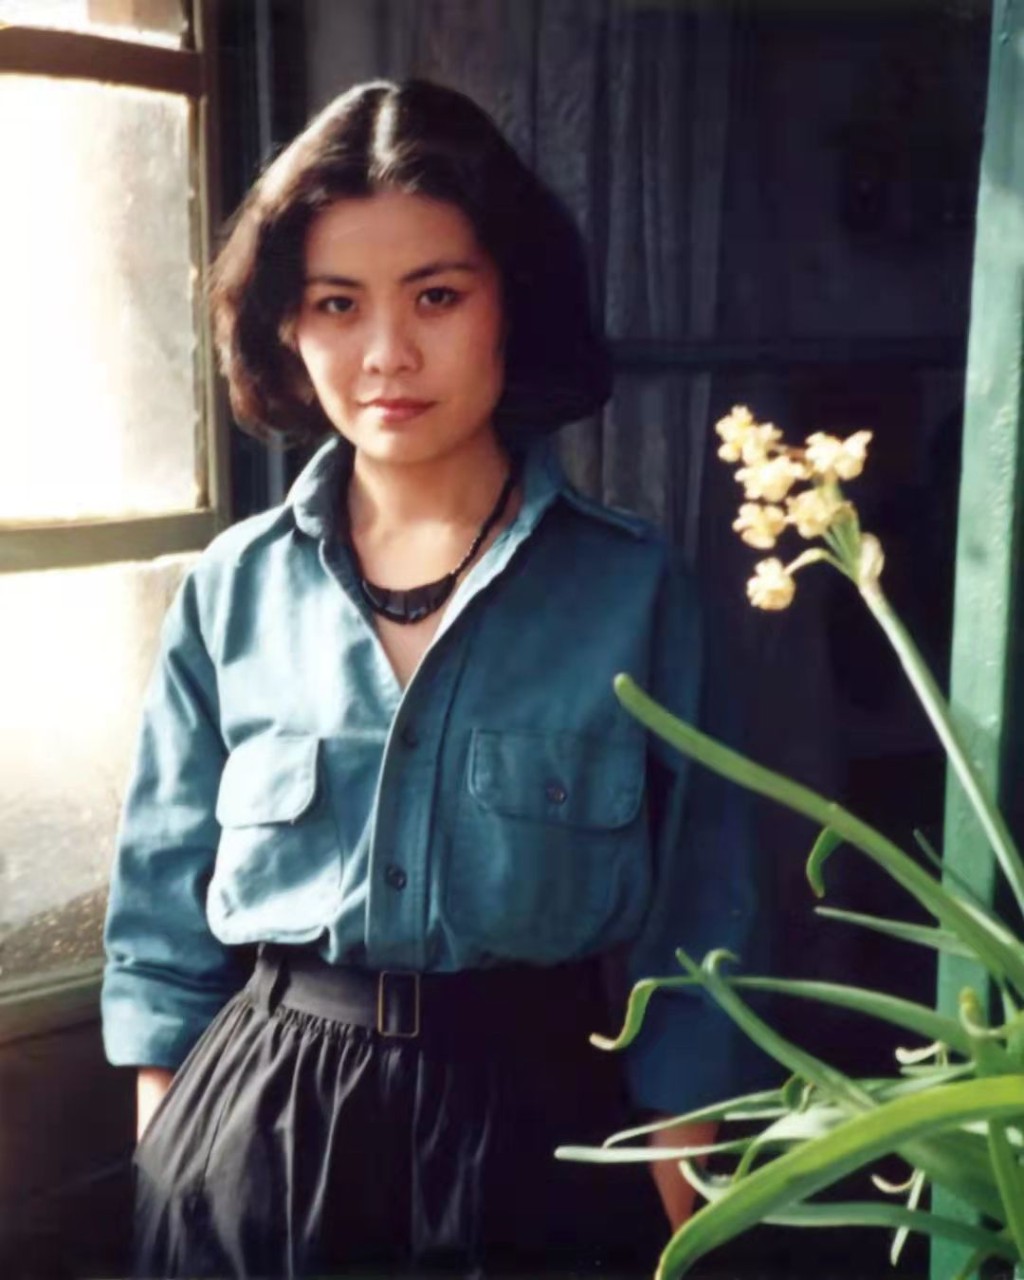 鐵凝，女，漢族，1957年9月出生於北京，祖籍河北趙縣，1975年11月入黨，1975年7月參加工作，文學創作一級。現任第二十屆中央委員，中國文學藝術界聯合會主席、中國作家協會主席。